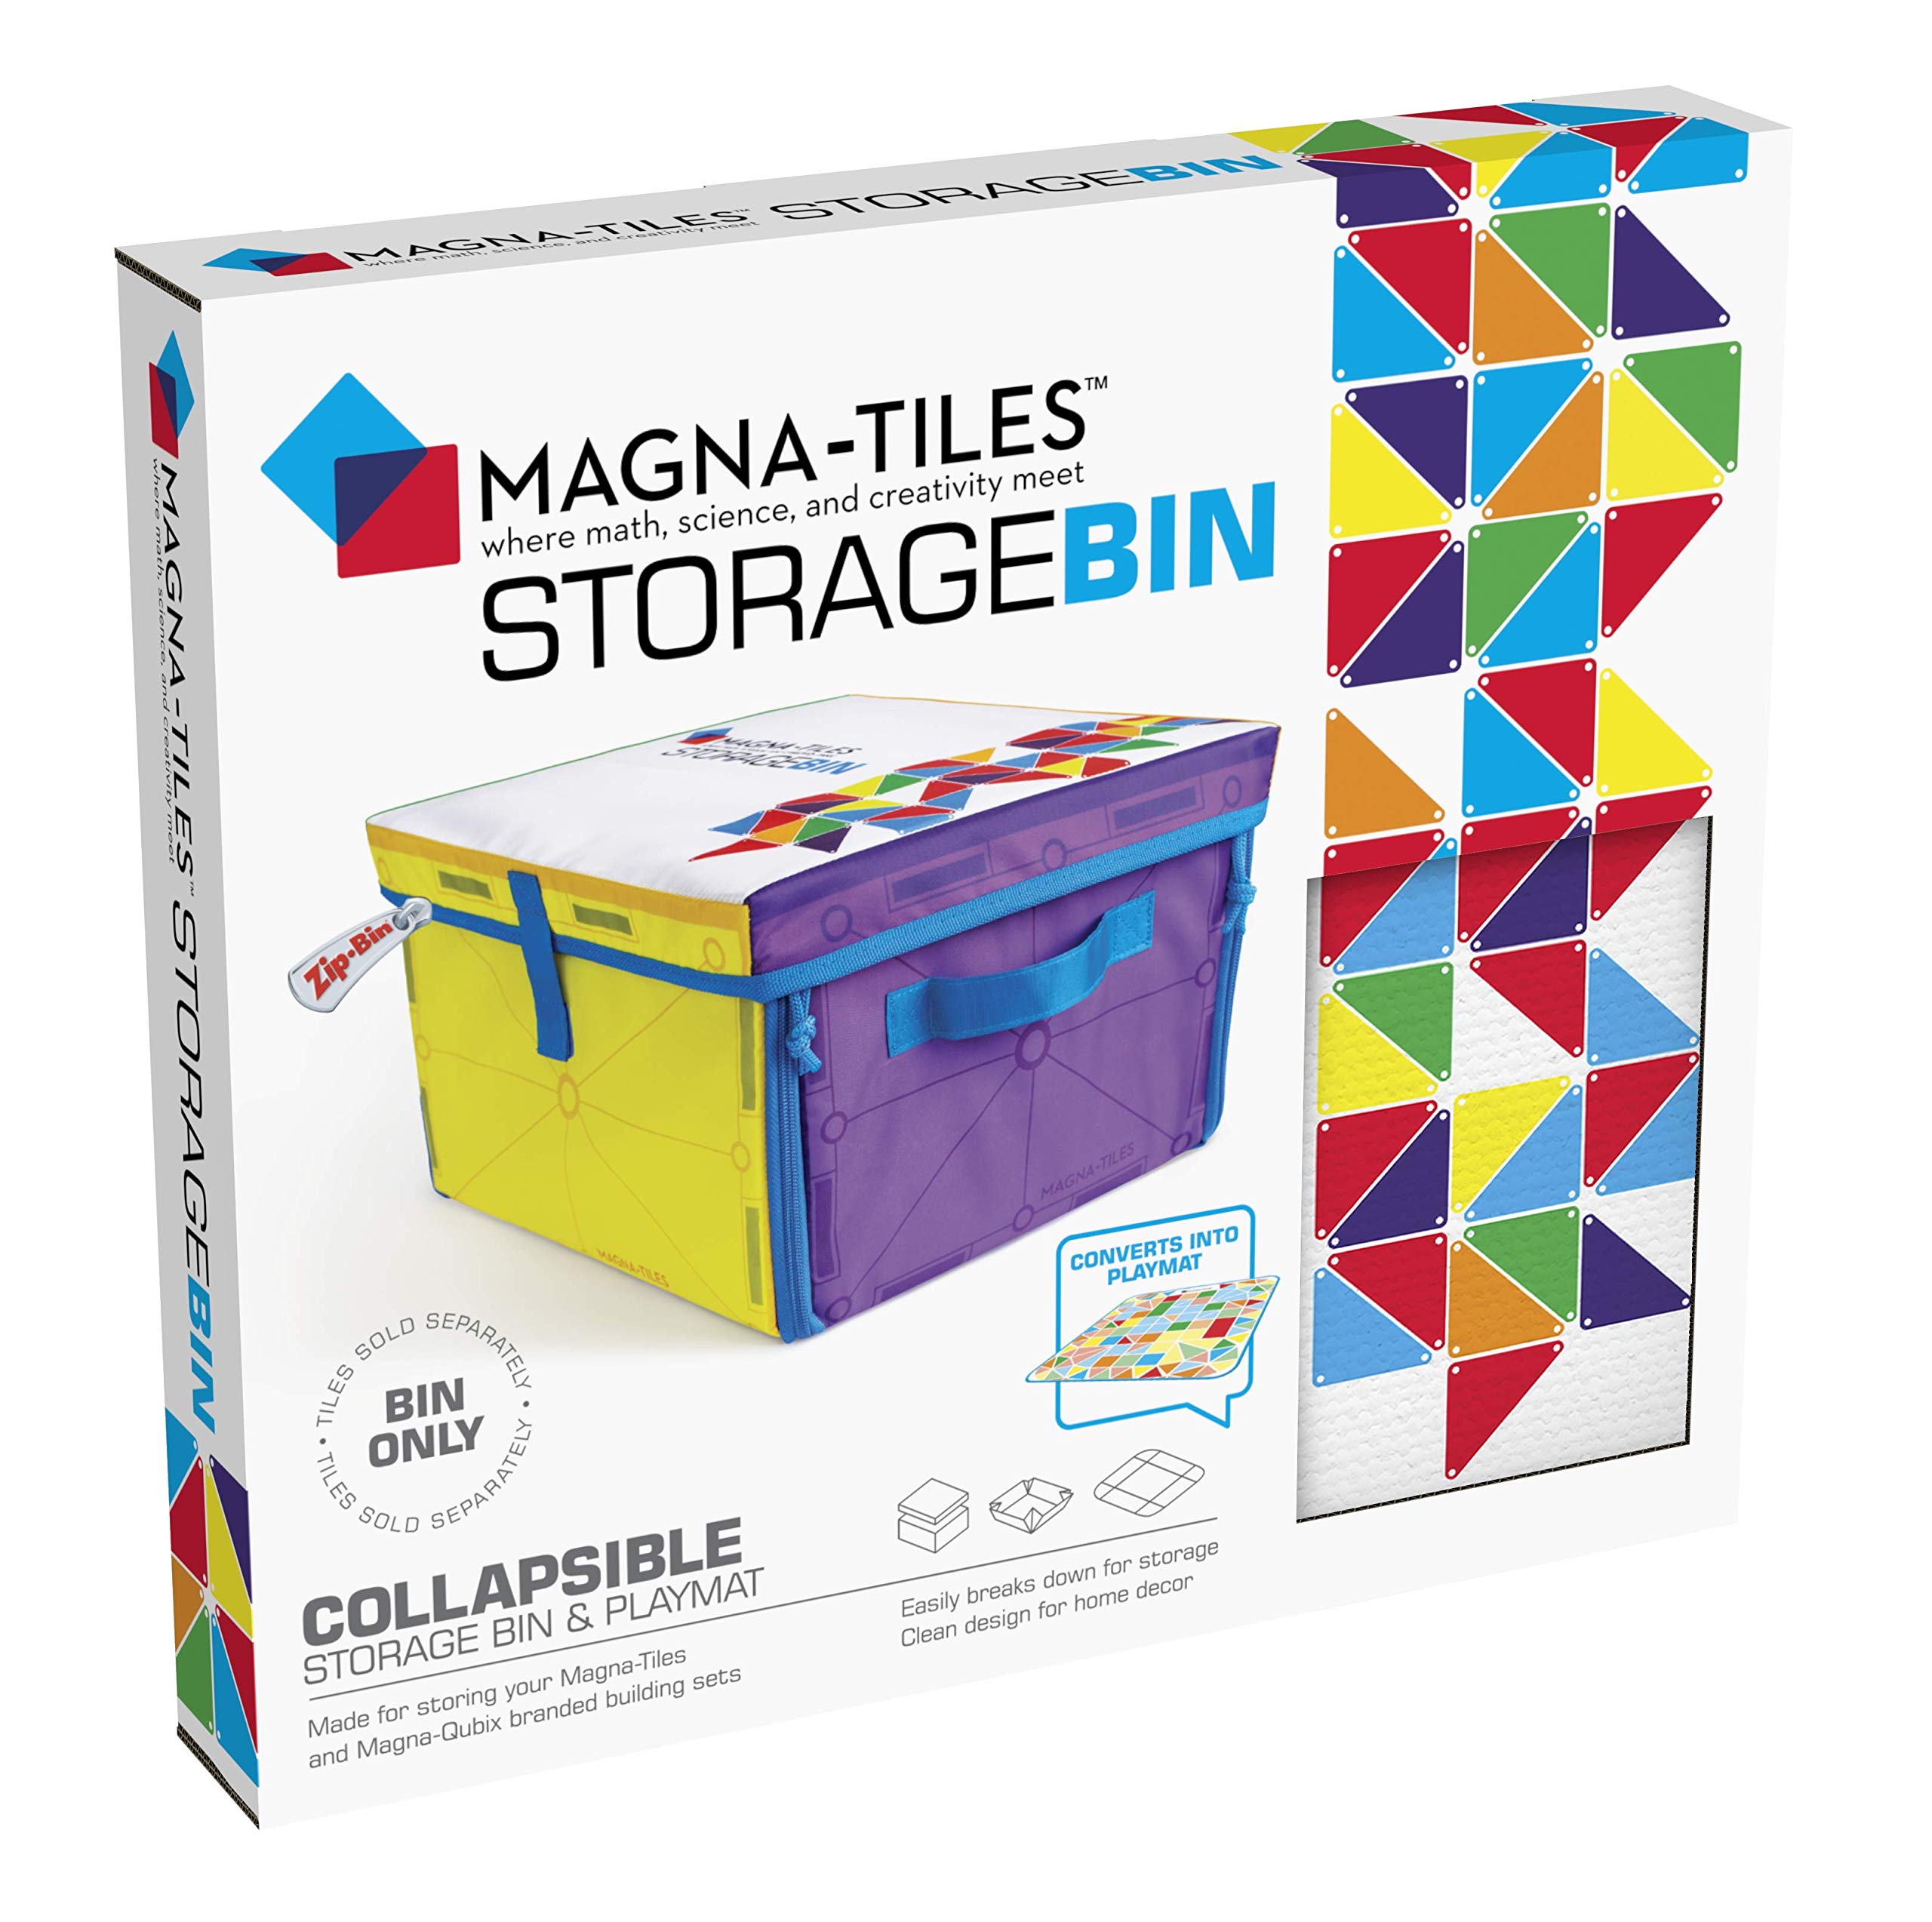 Magna Tiles Papelera de almacenamiento y juego interactivo-mayo